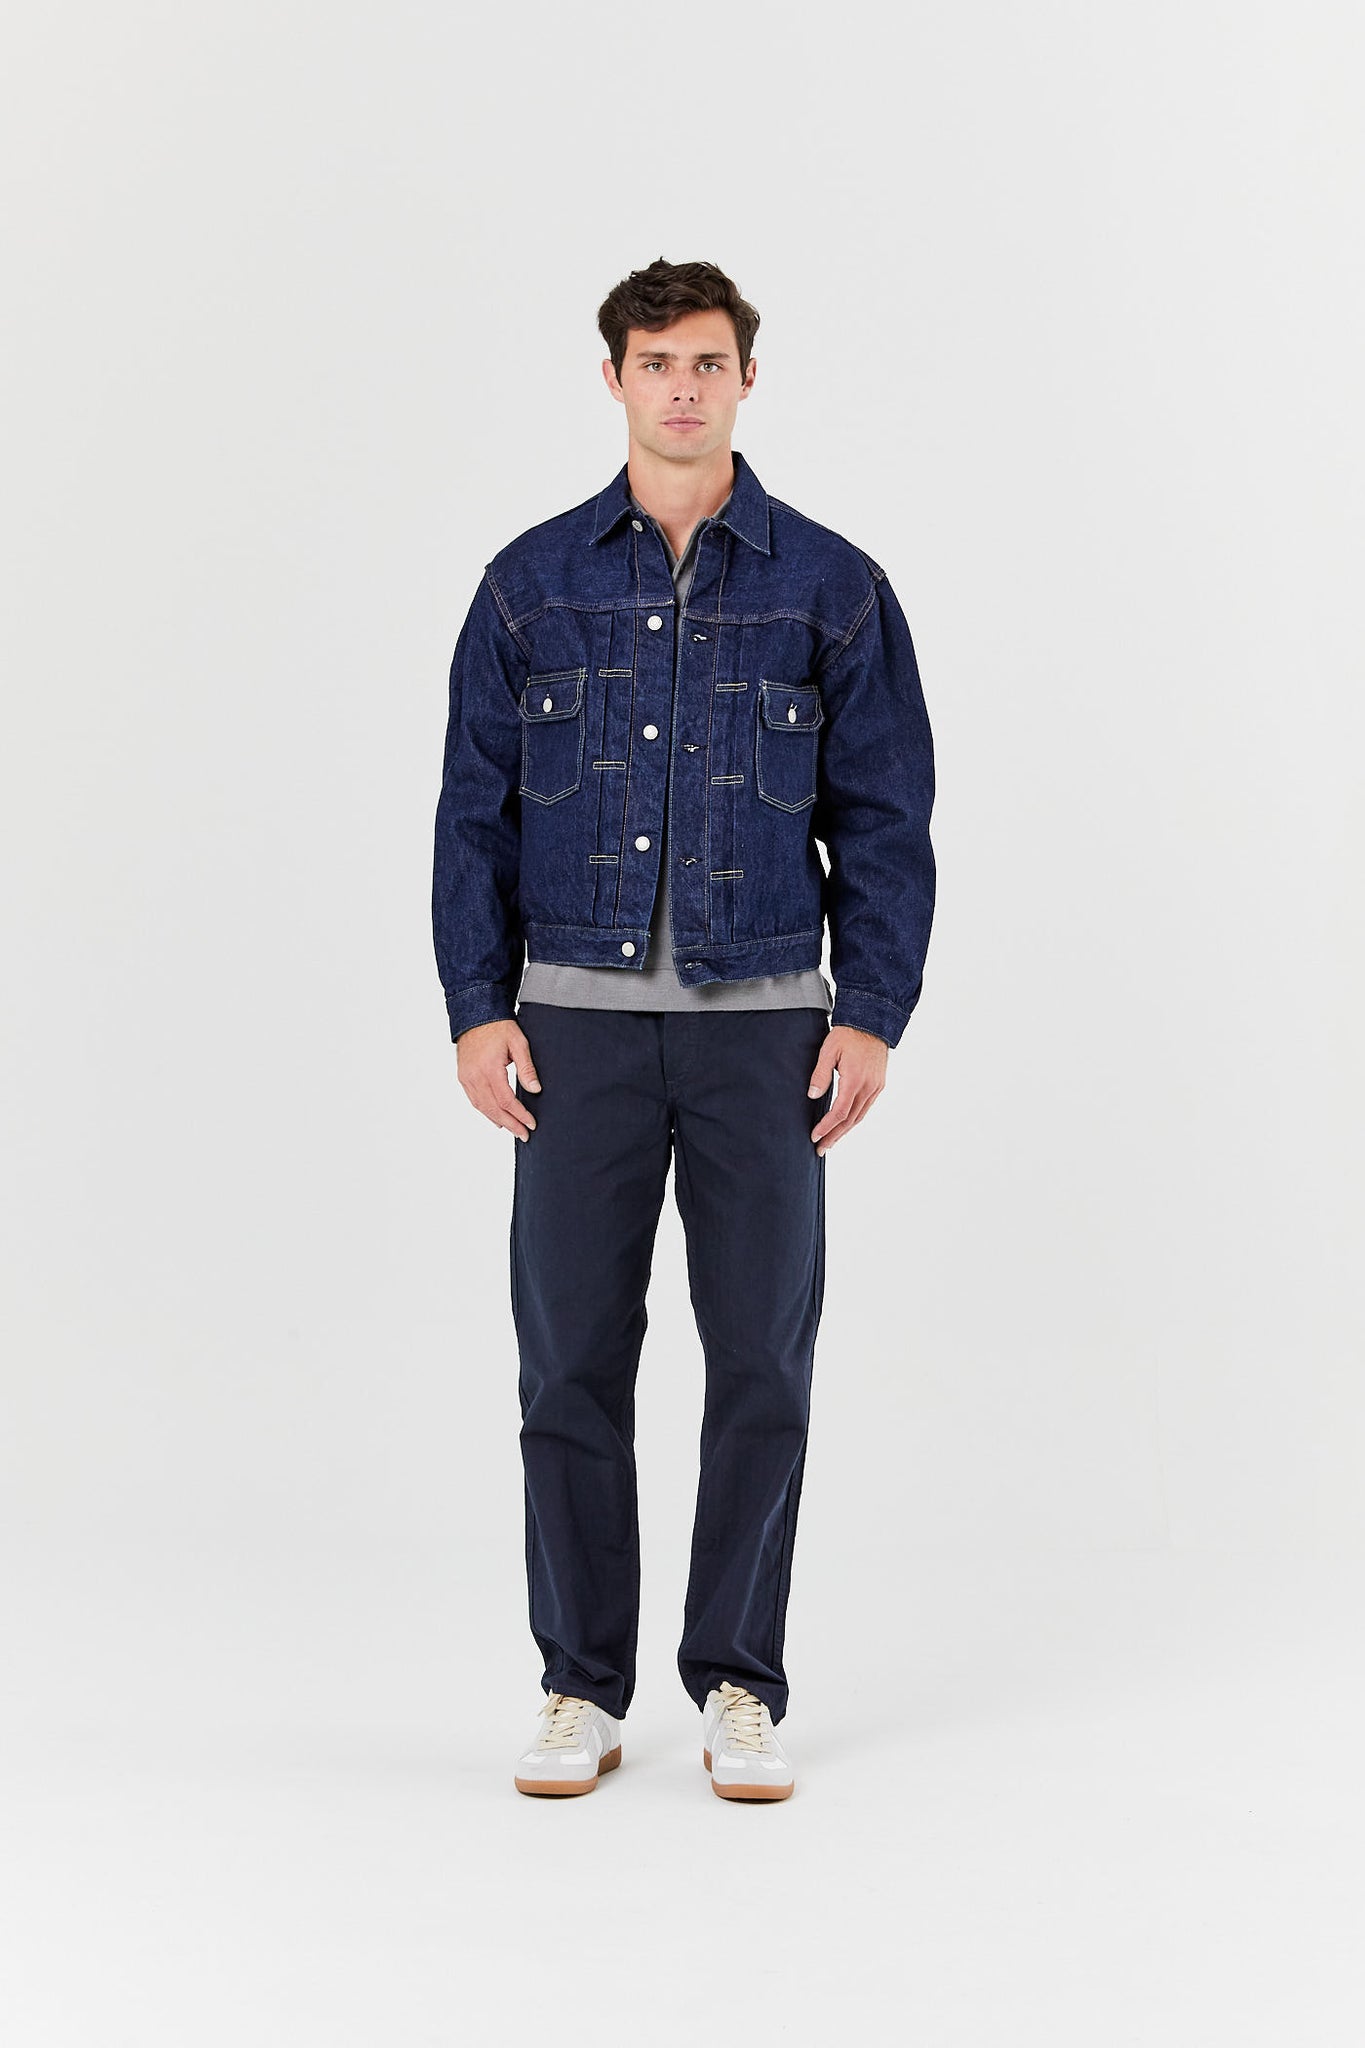 Highline Denim Jacket at Seven7 Jeans